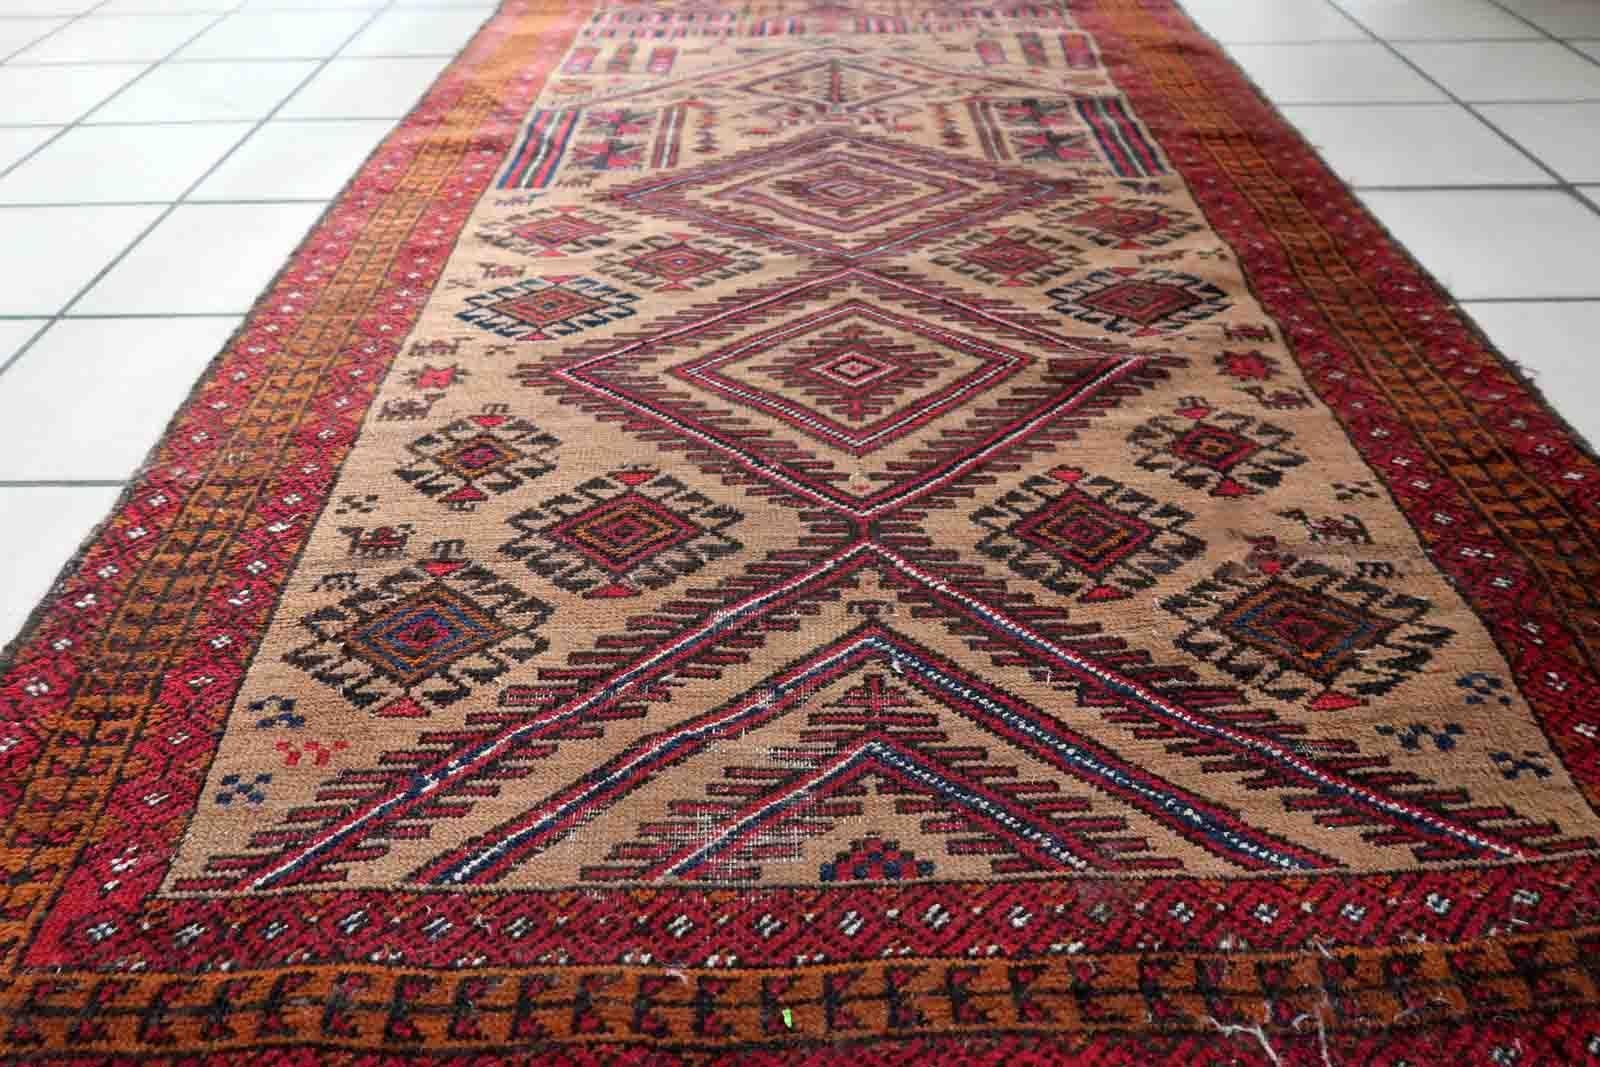 Tapis ancien afghan Baluch, fait à la main, à motifs de prières tribales. Le tapis date du début du 20ème siècle et est en état d'origine, il a quelques poils bas.

-état : original,  une pile basse,

-Circa : 1920,

-Taille : 2.8' x 4.5' (86cm x